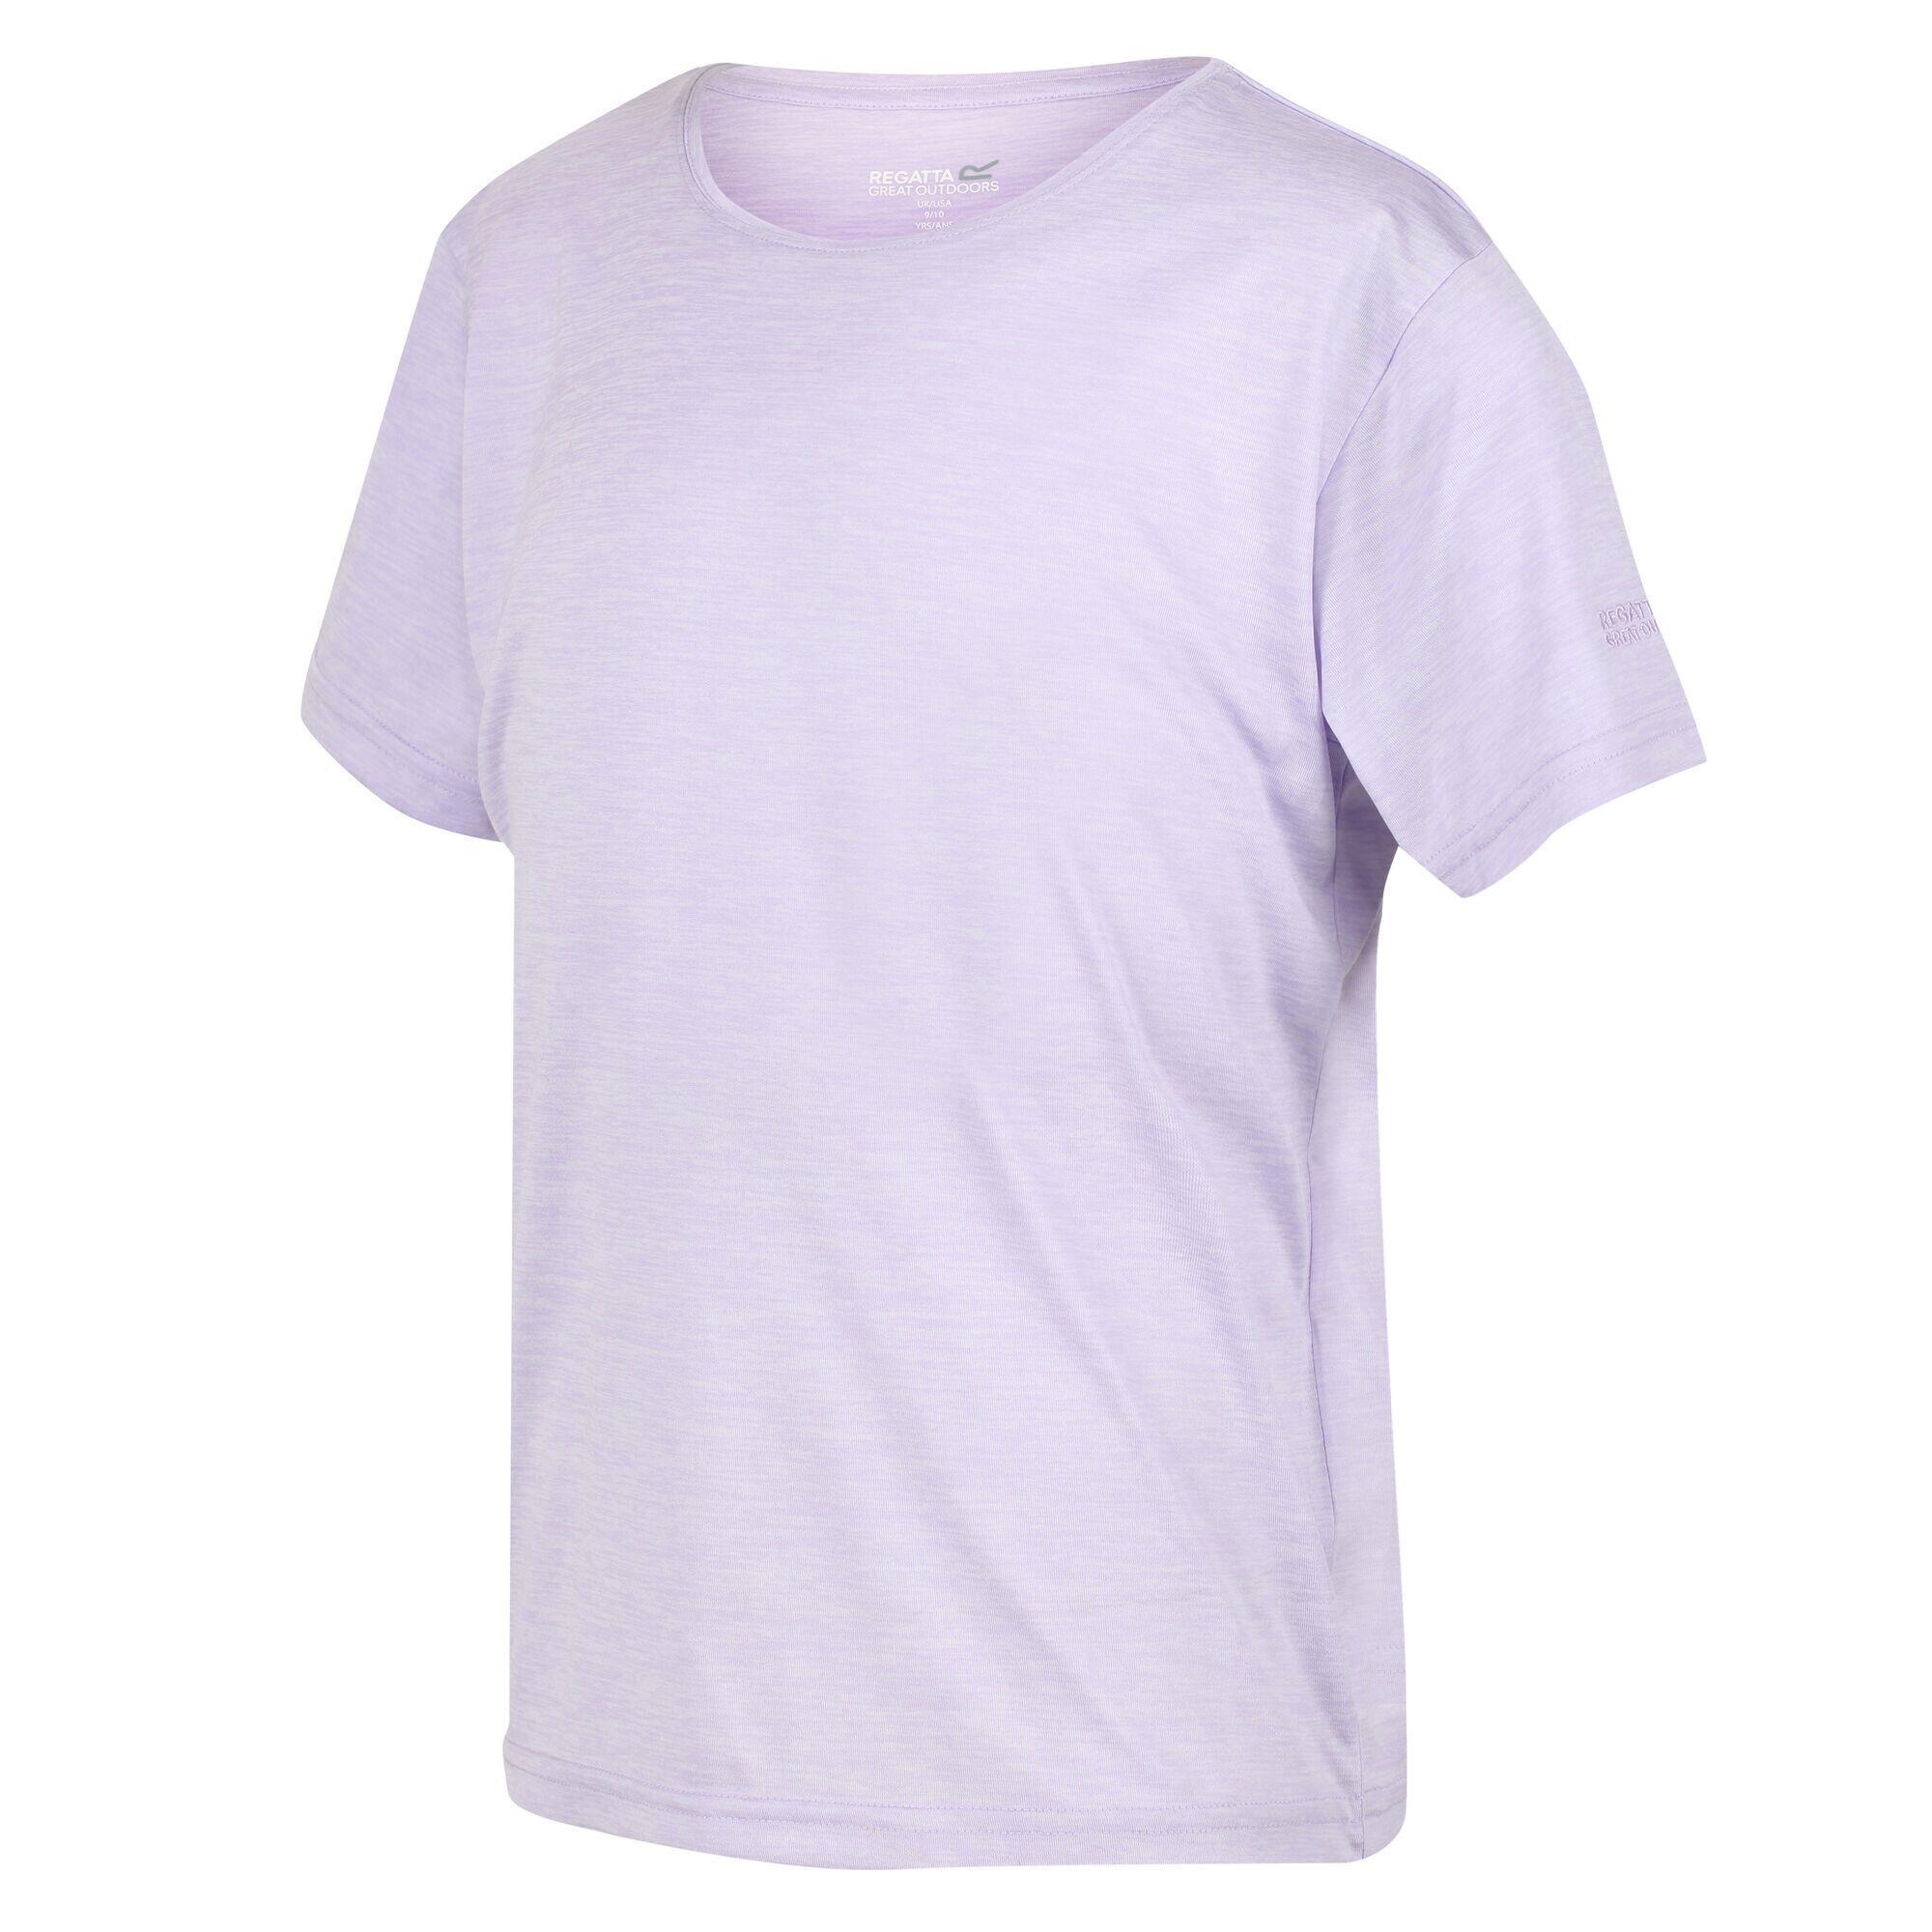 Футболка Regatta Fingal Edition, розовый / фиолетовый футболка розовый